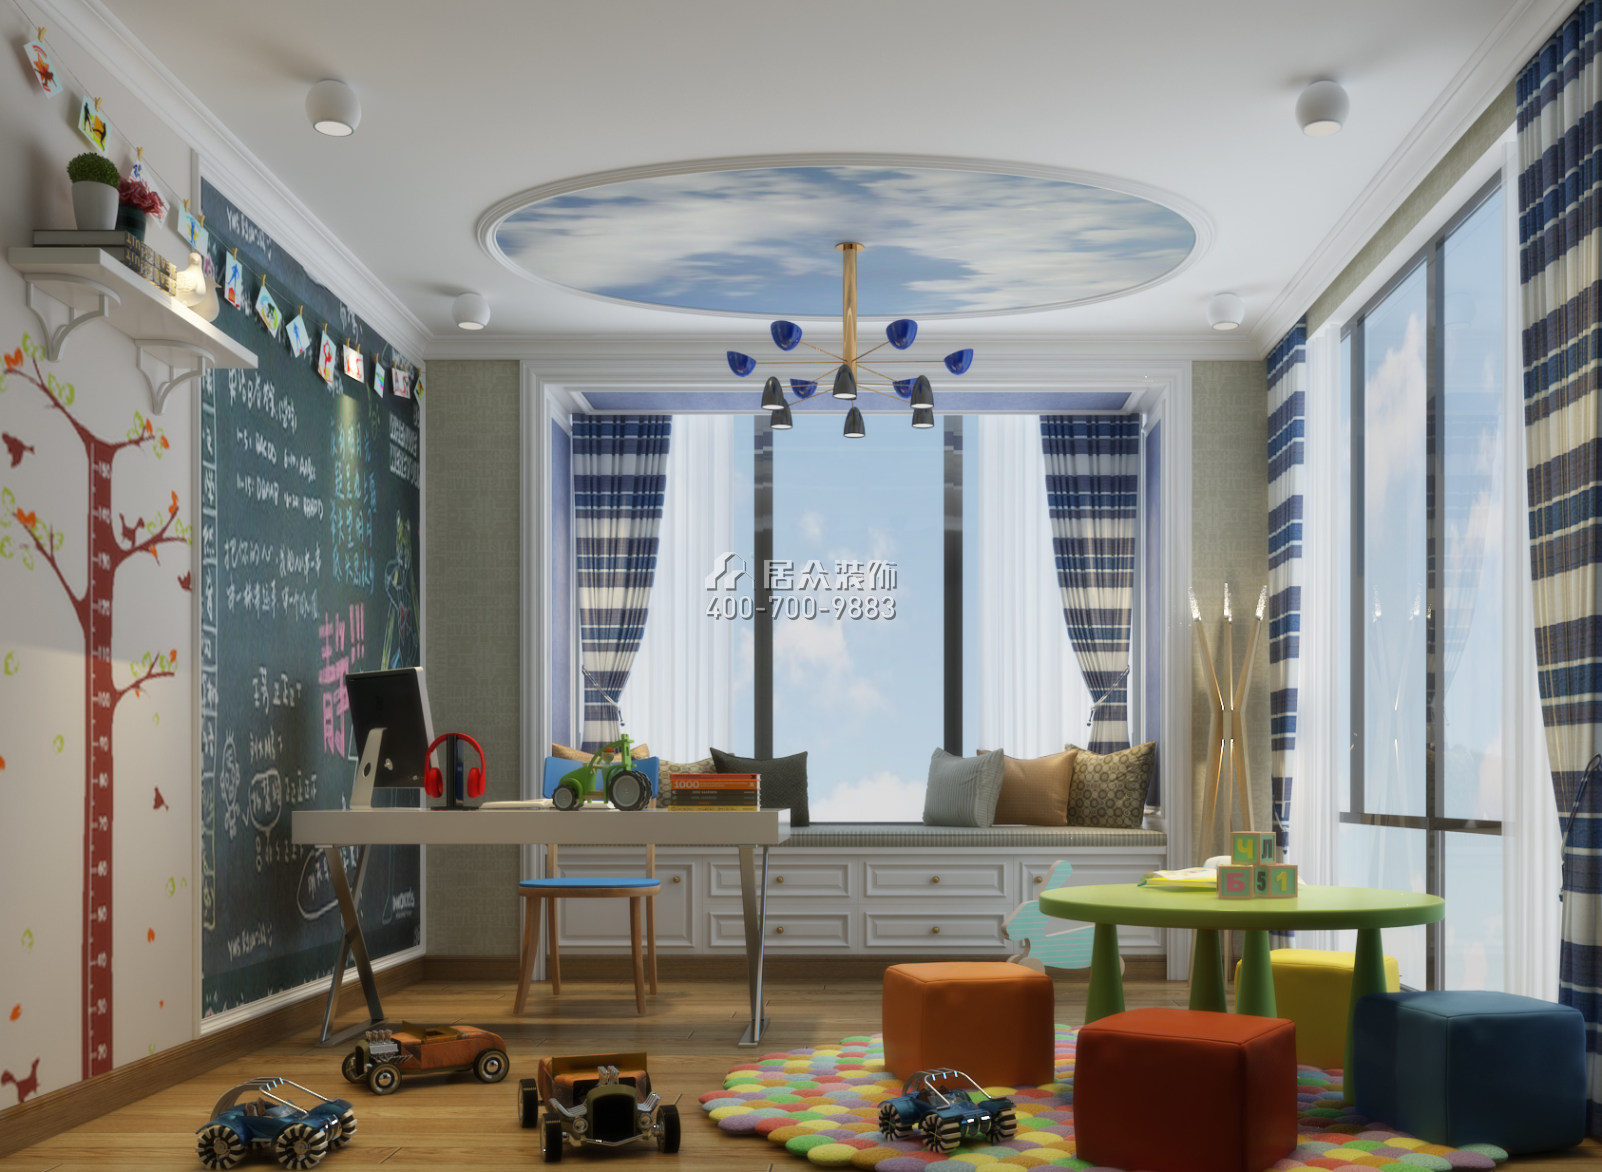 幸福世家270平方米中式风格复式户型儿童房装修效果图